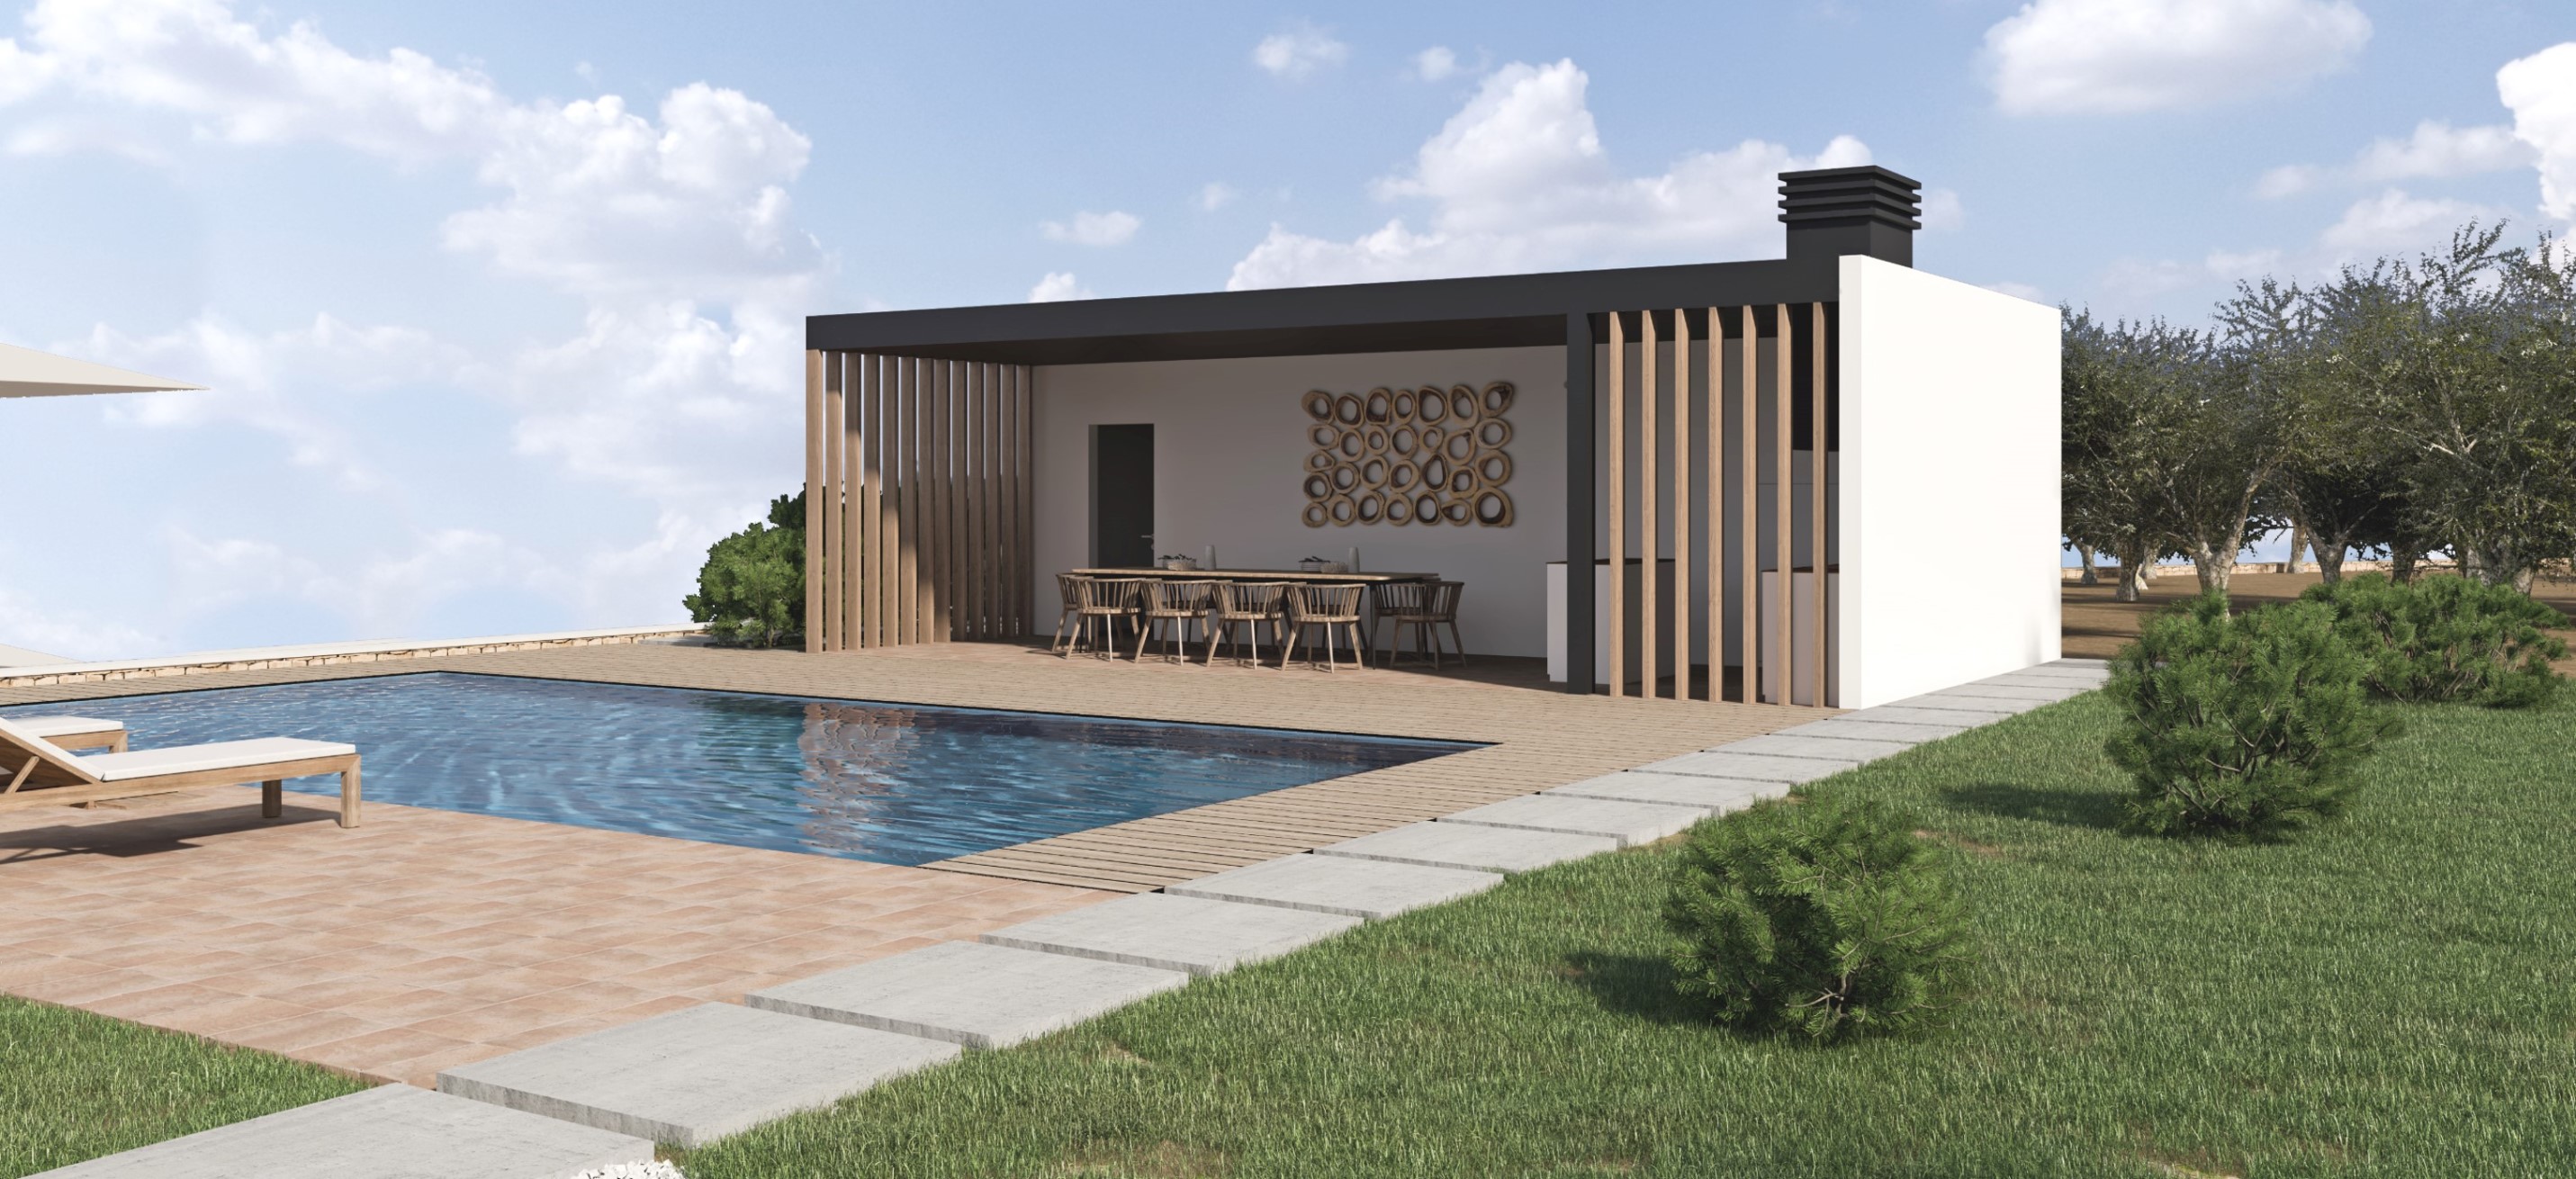 Nieuw gebouwde villa in Moraira